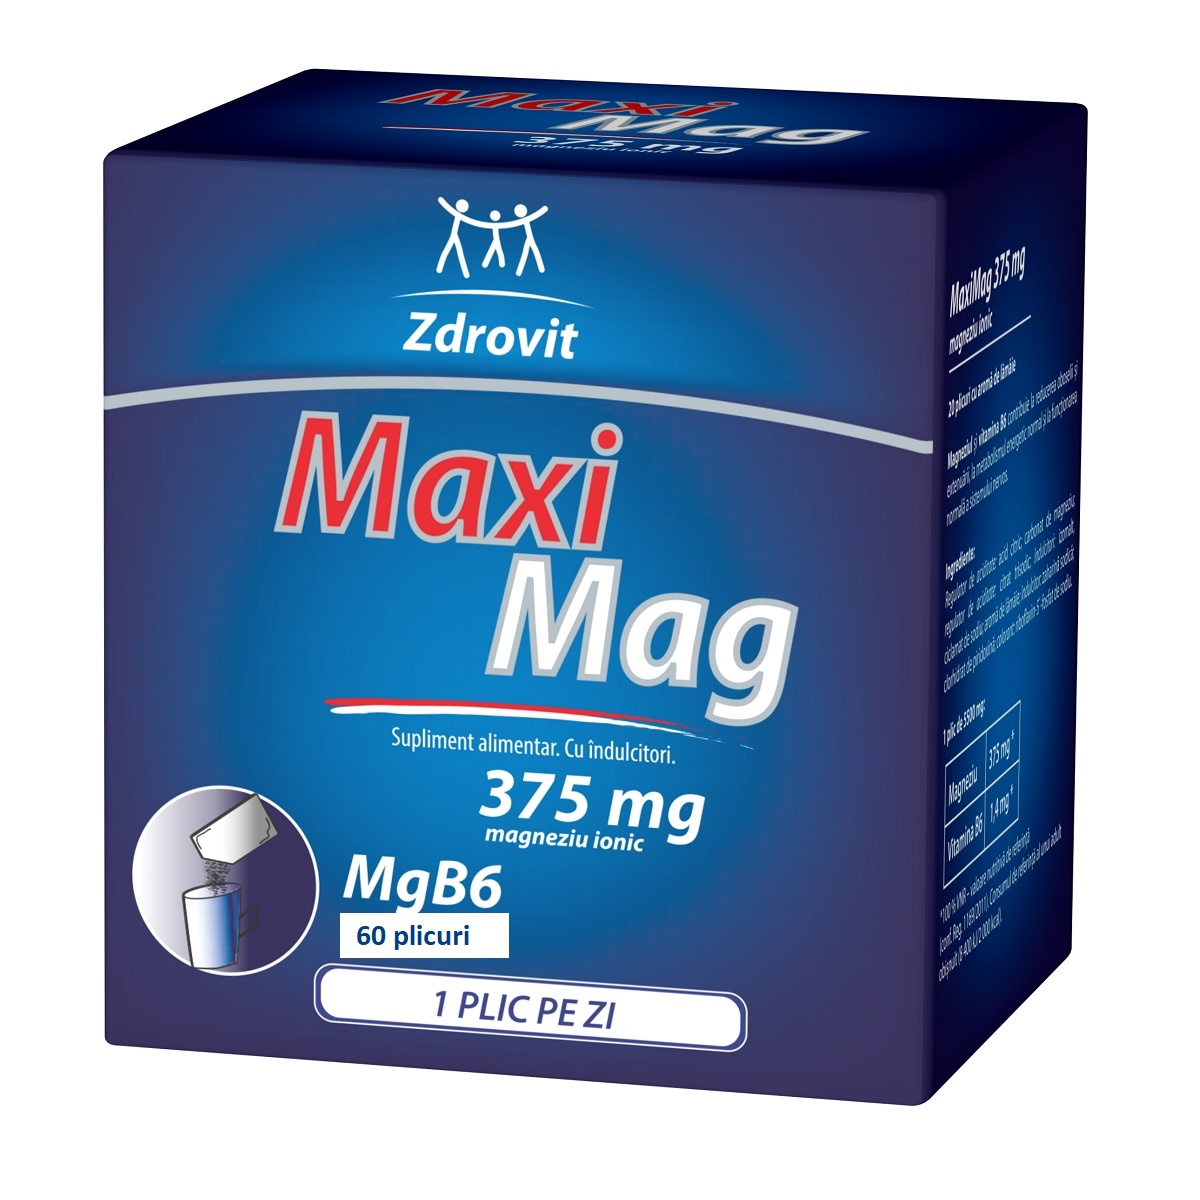 Uz general - MaxiMag, 375 mg, 60 plicuri + 20% reducere, Zdrovit, sinapis.ro